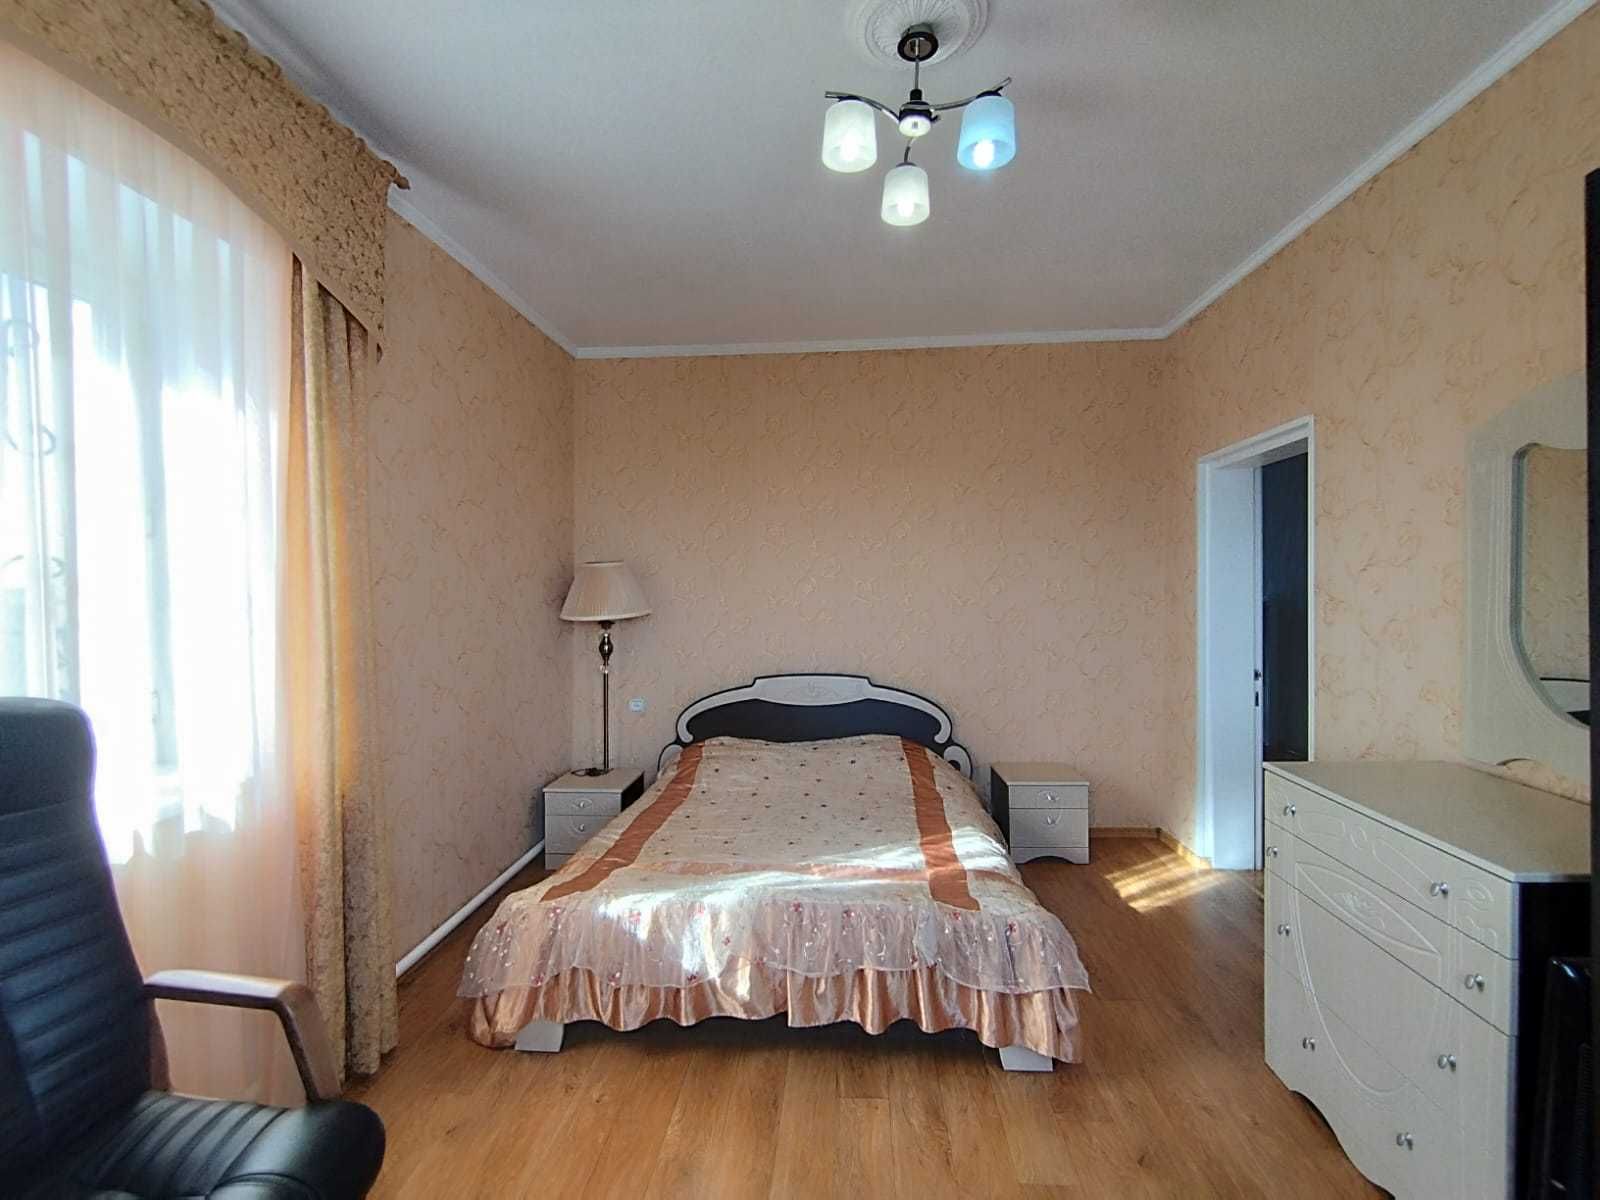 Продам 3этажный, меблированный, с бытовой техникой, особняк в Отрадное